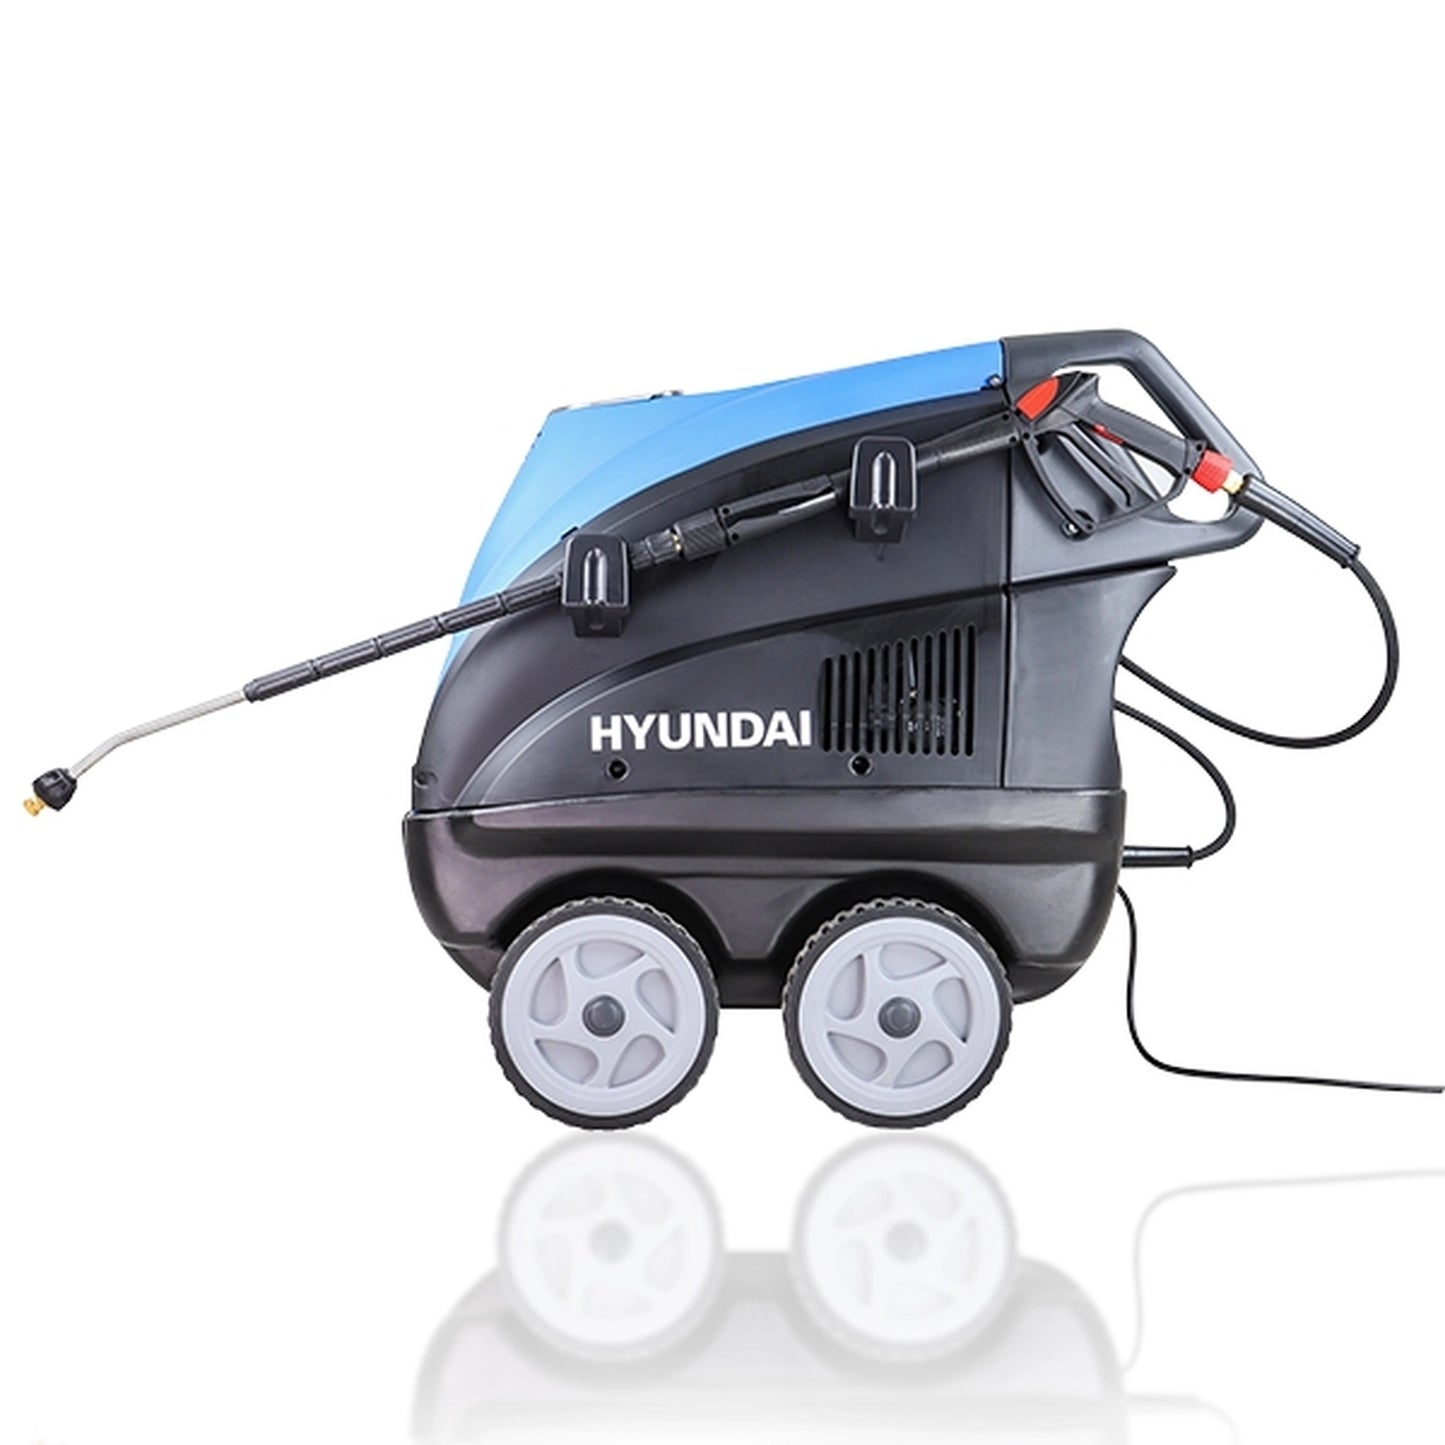 Hyundai HY210HPW-3 Hot Pressure Washer